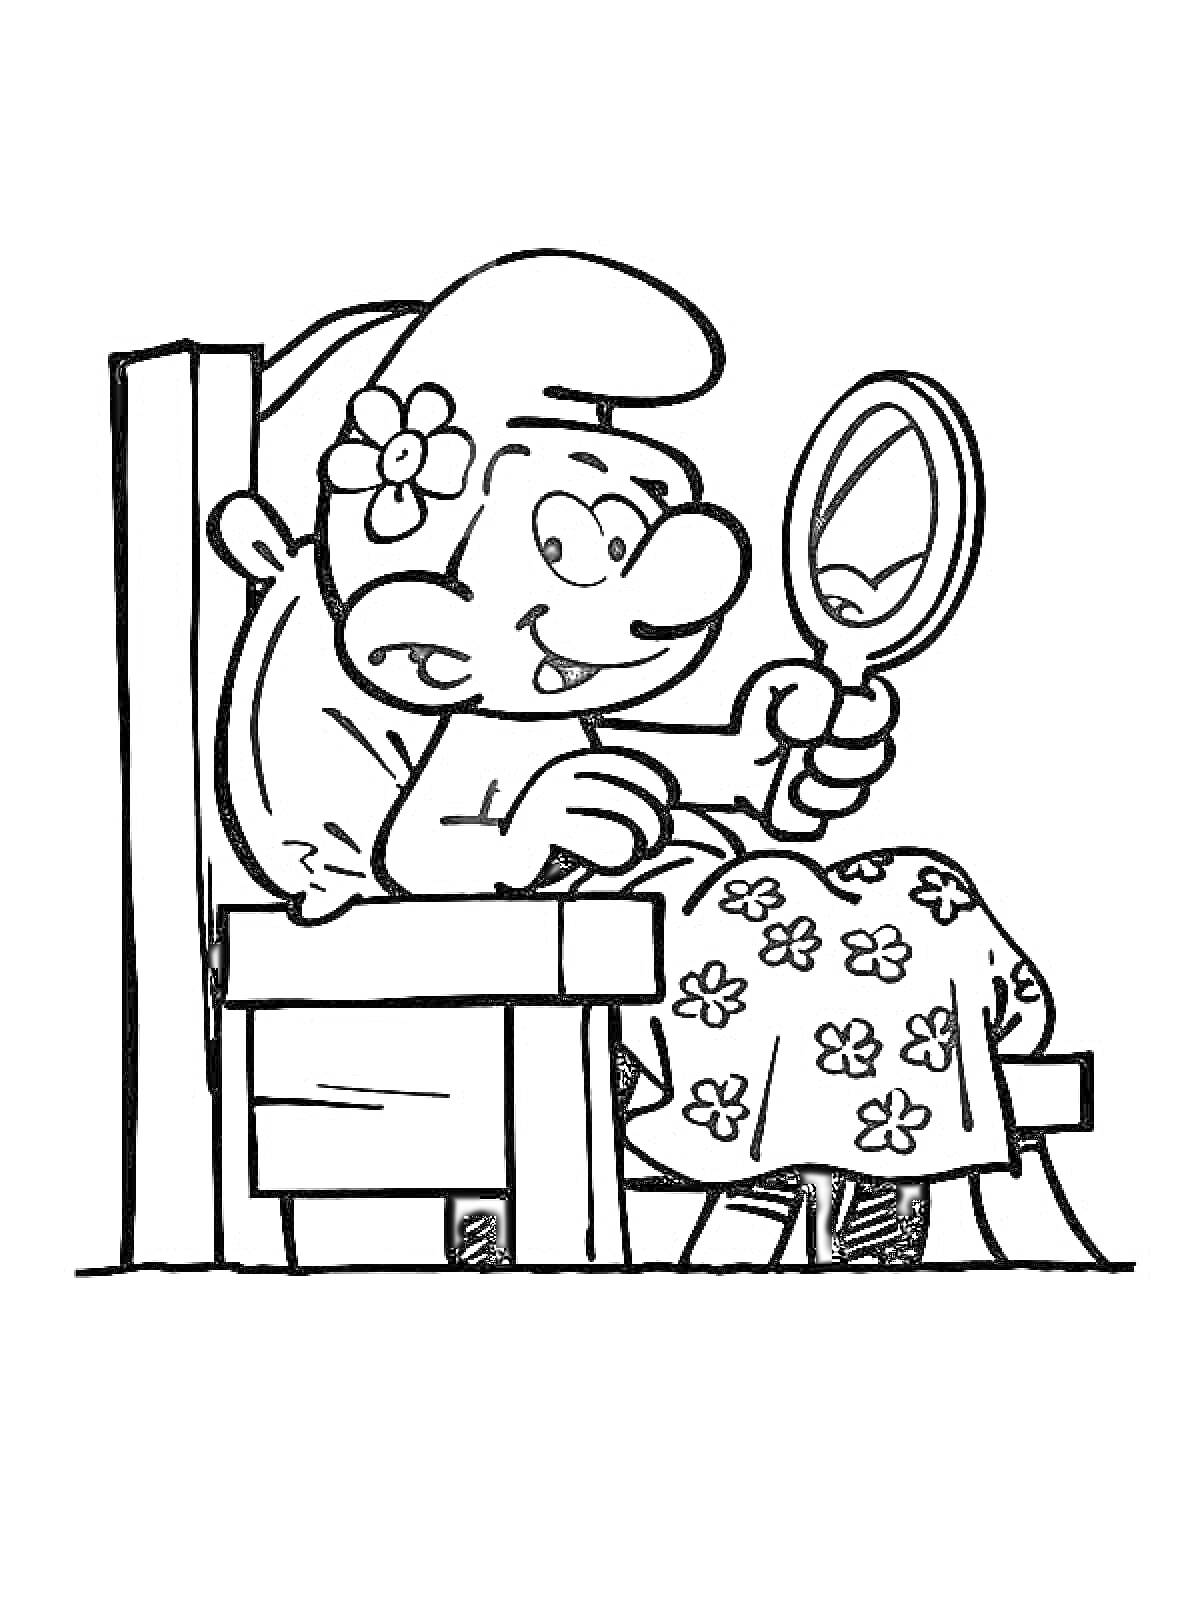 Раскраска Смурфик с цветком за ухом, сидящий на стуле и смотрящий в зеркало